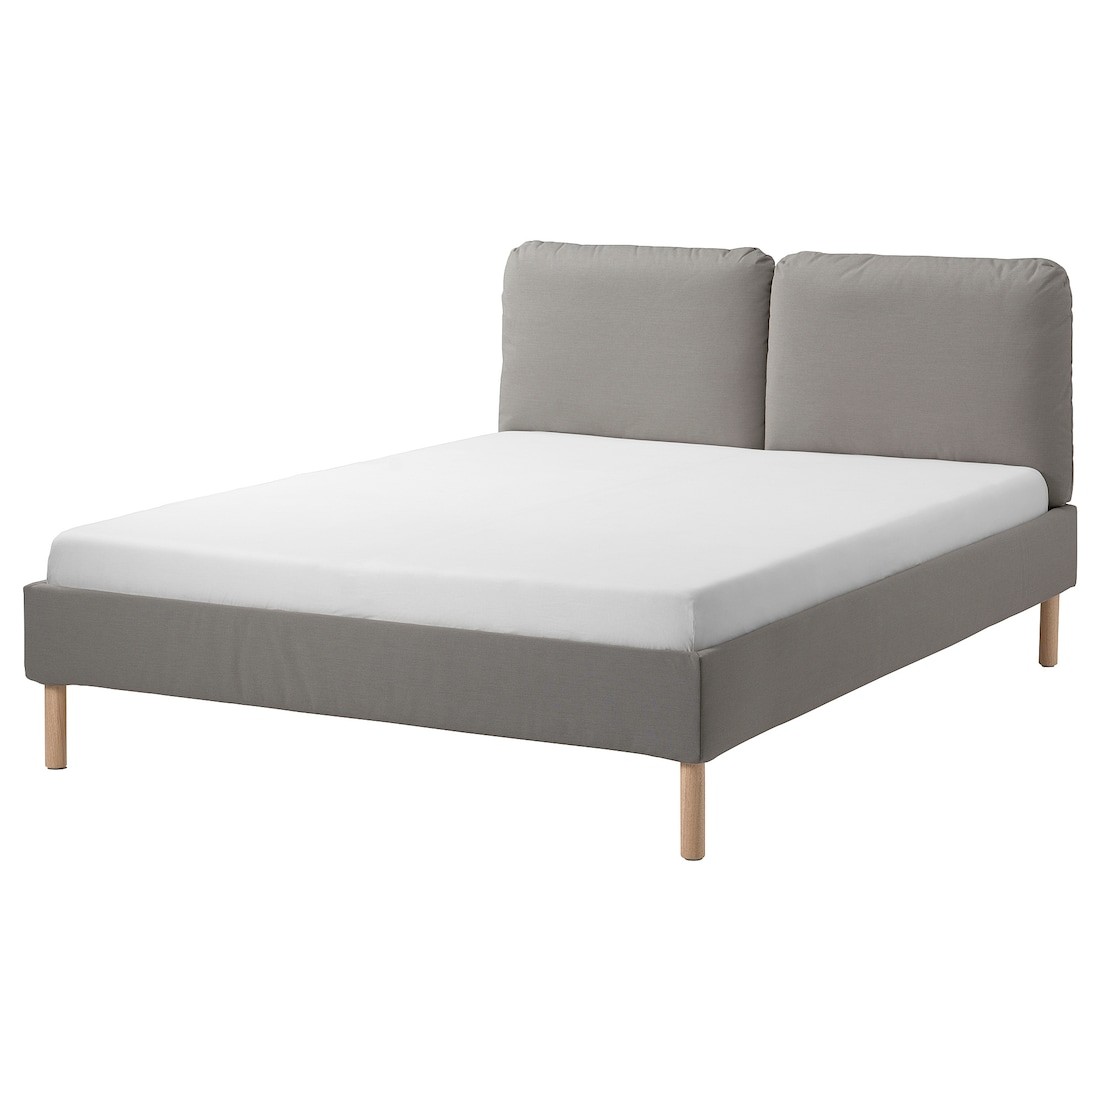 SAGESUND Кровать с обивкой, Дисерёд коричневый/Лурой, 160x200 см